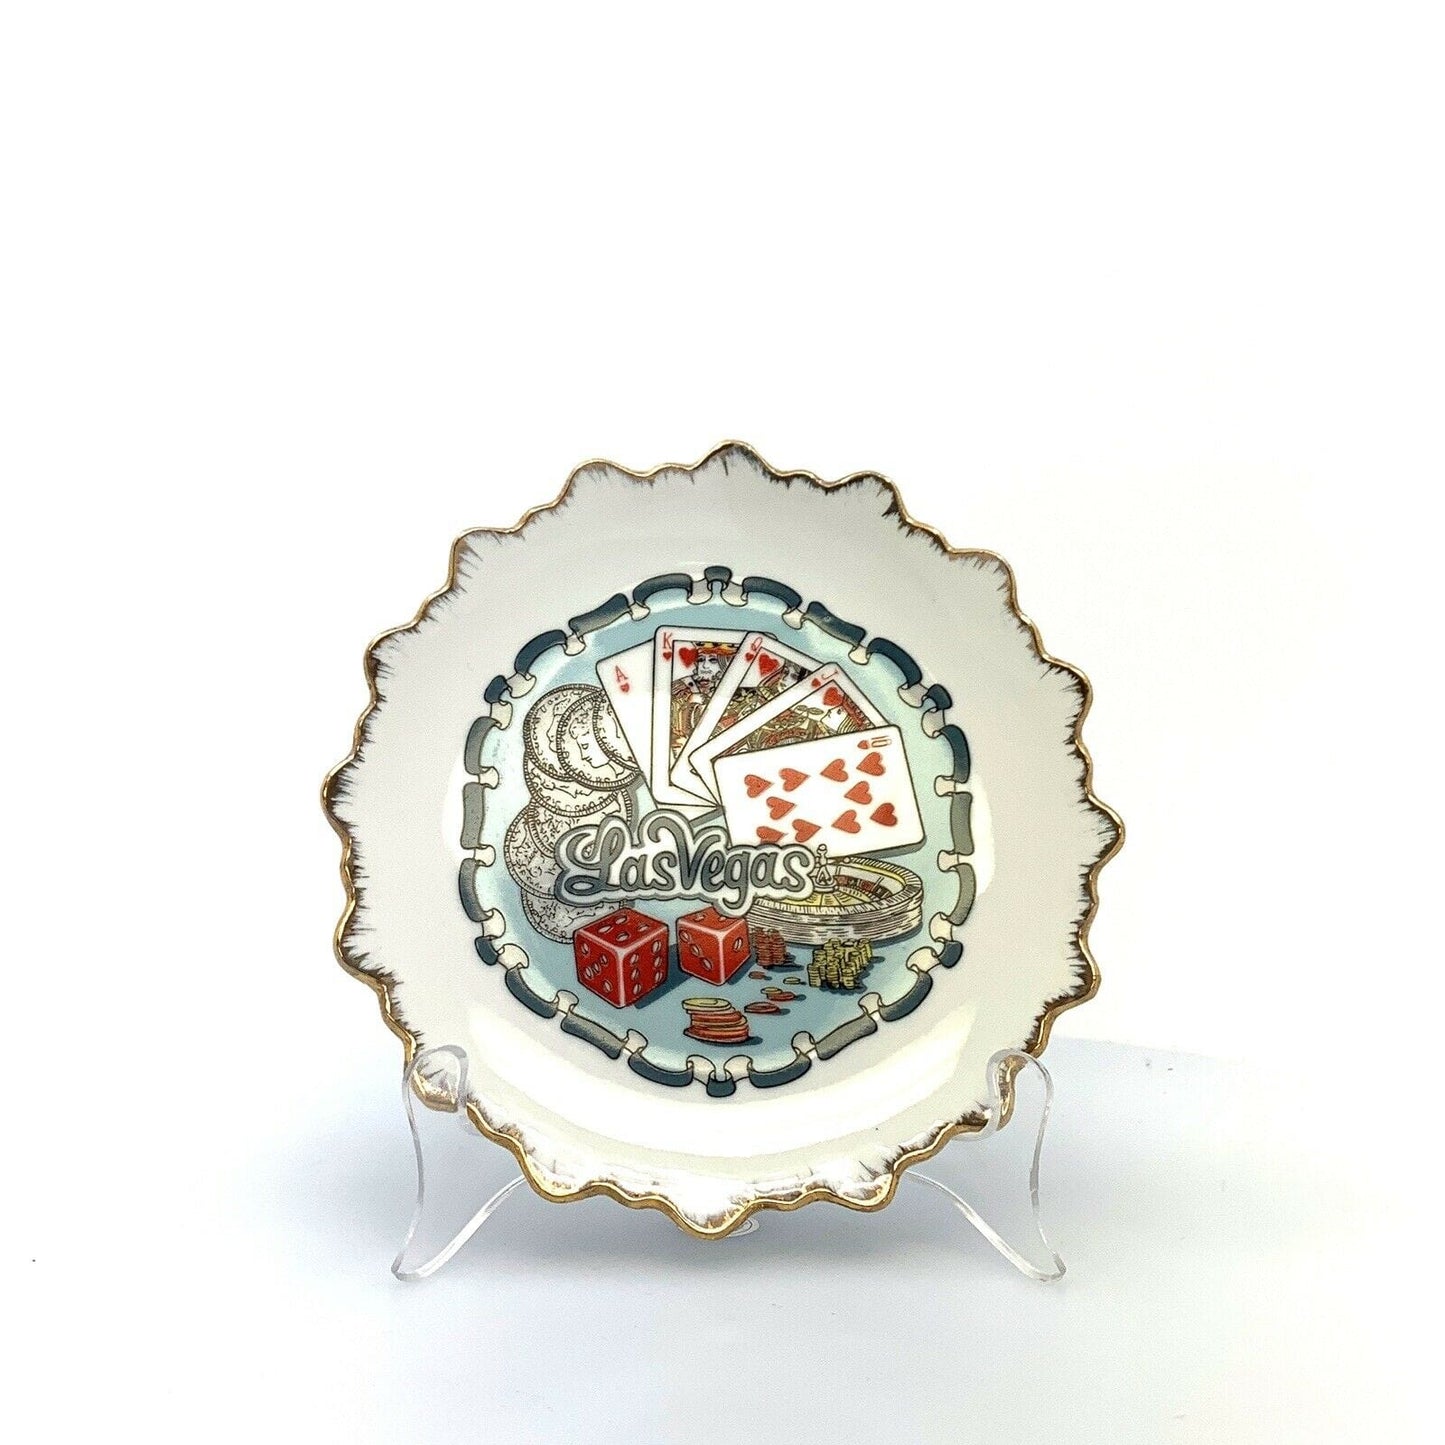 City Of Las Vegas Souvenir Collectible Plate, White - 8” - parsimonyshoppes